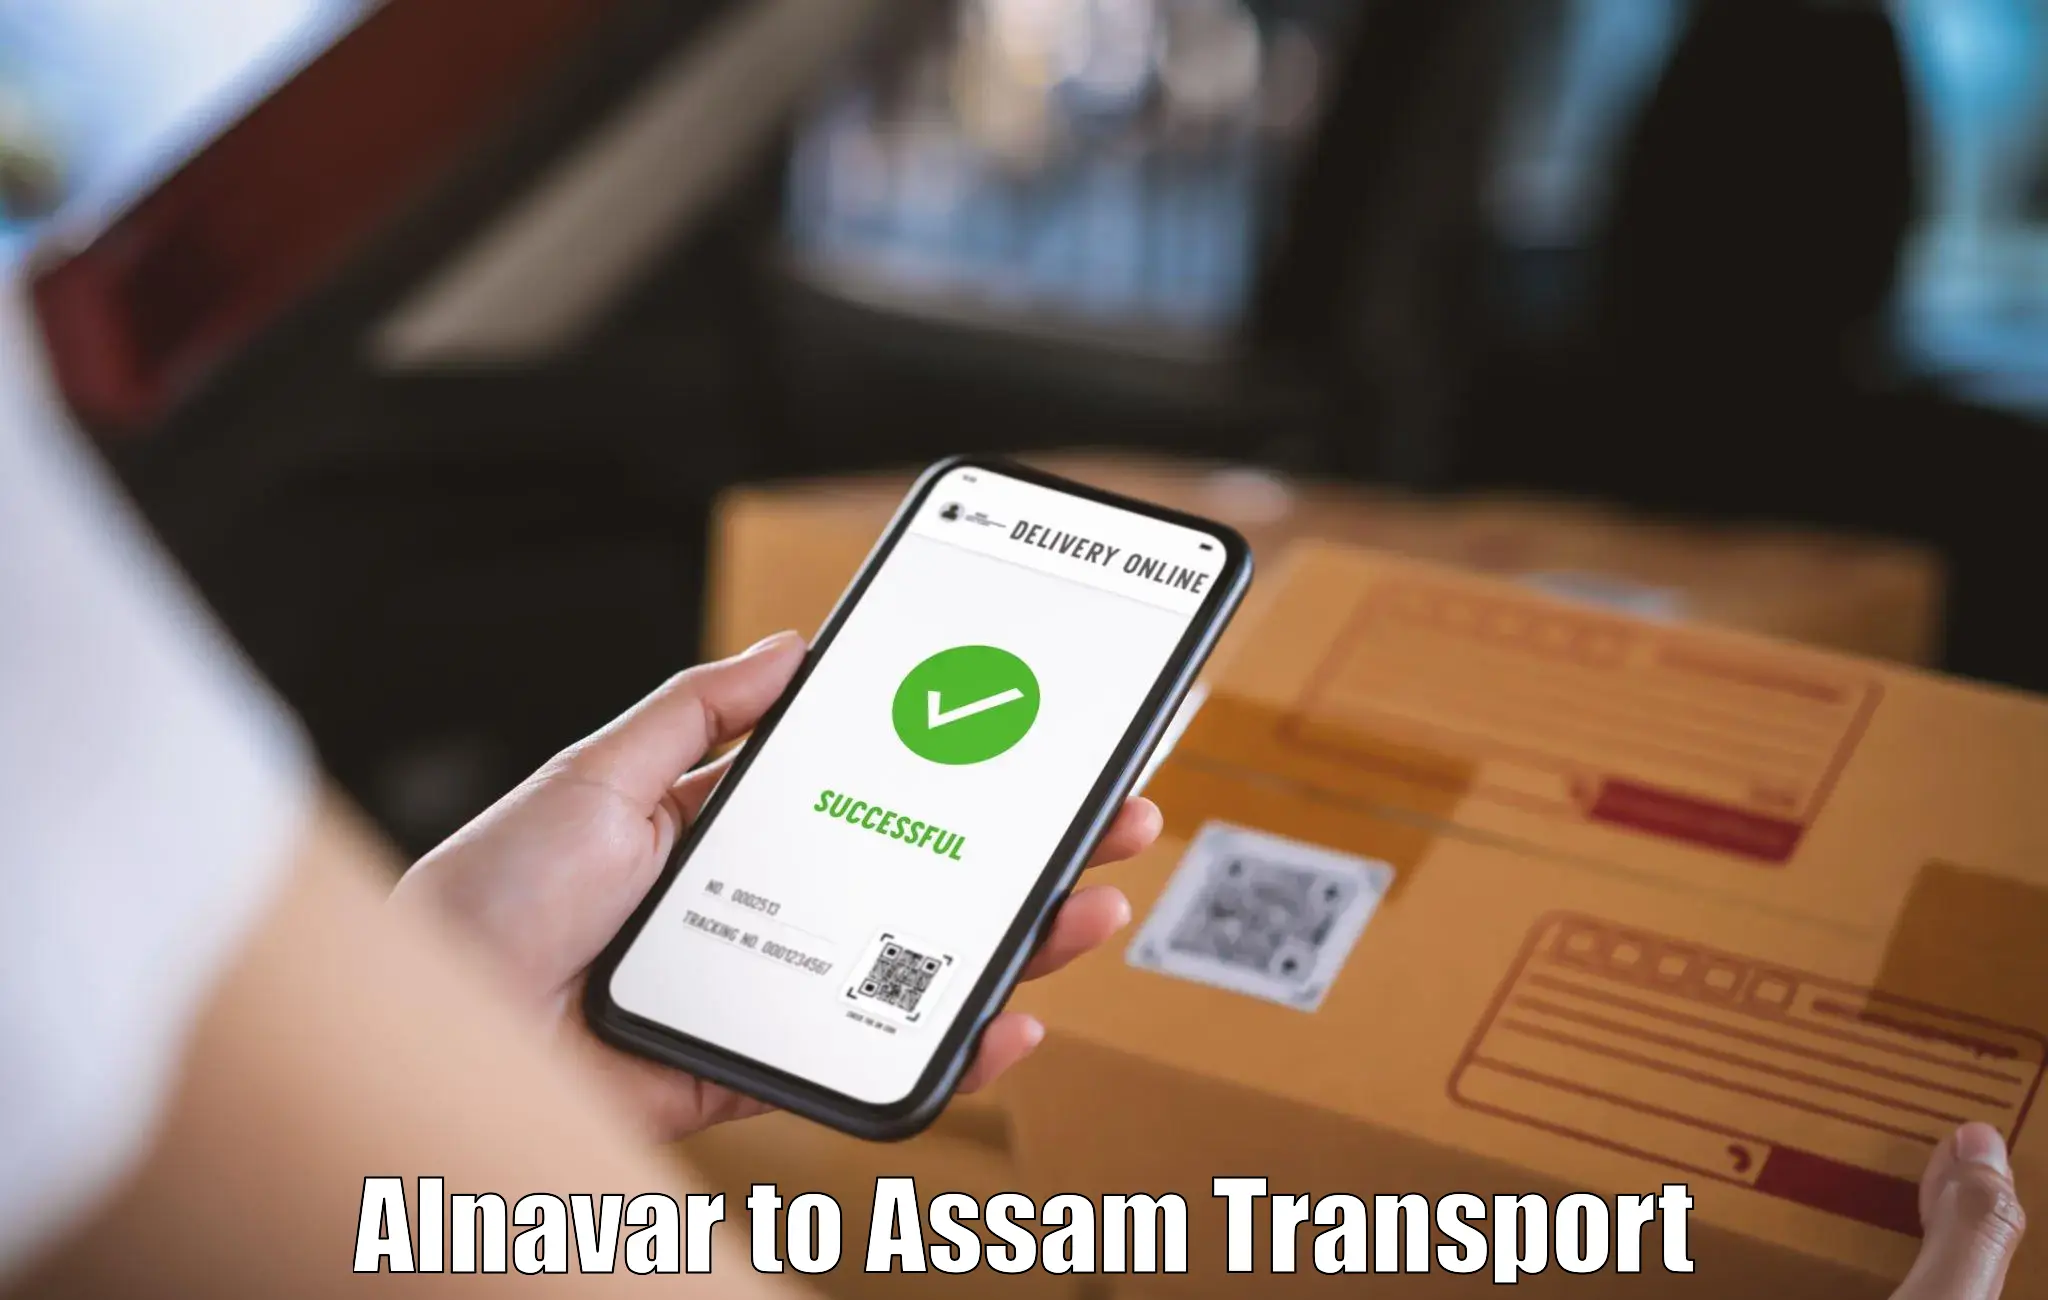 Daily transport service Alnavar to Hajo